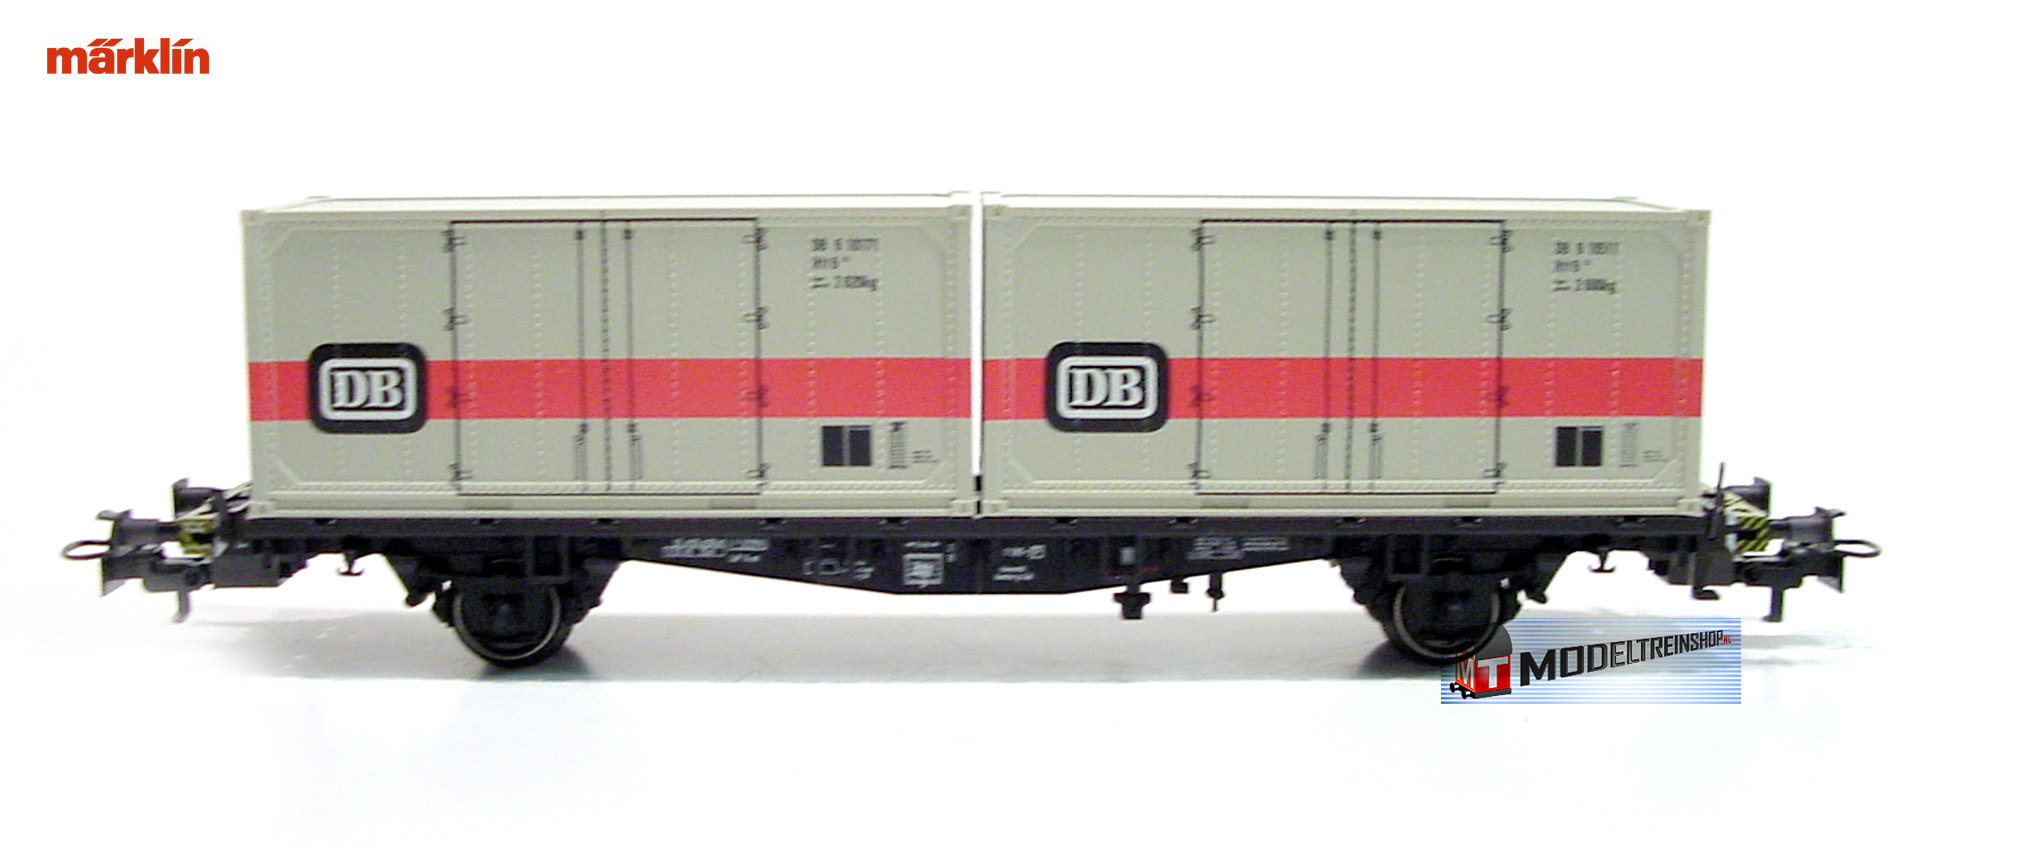 Marklin H0 00756-13 Container wagen DB - Modeltreinshop